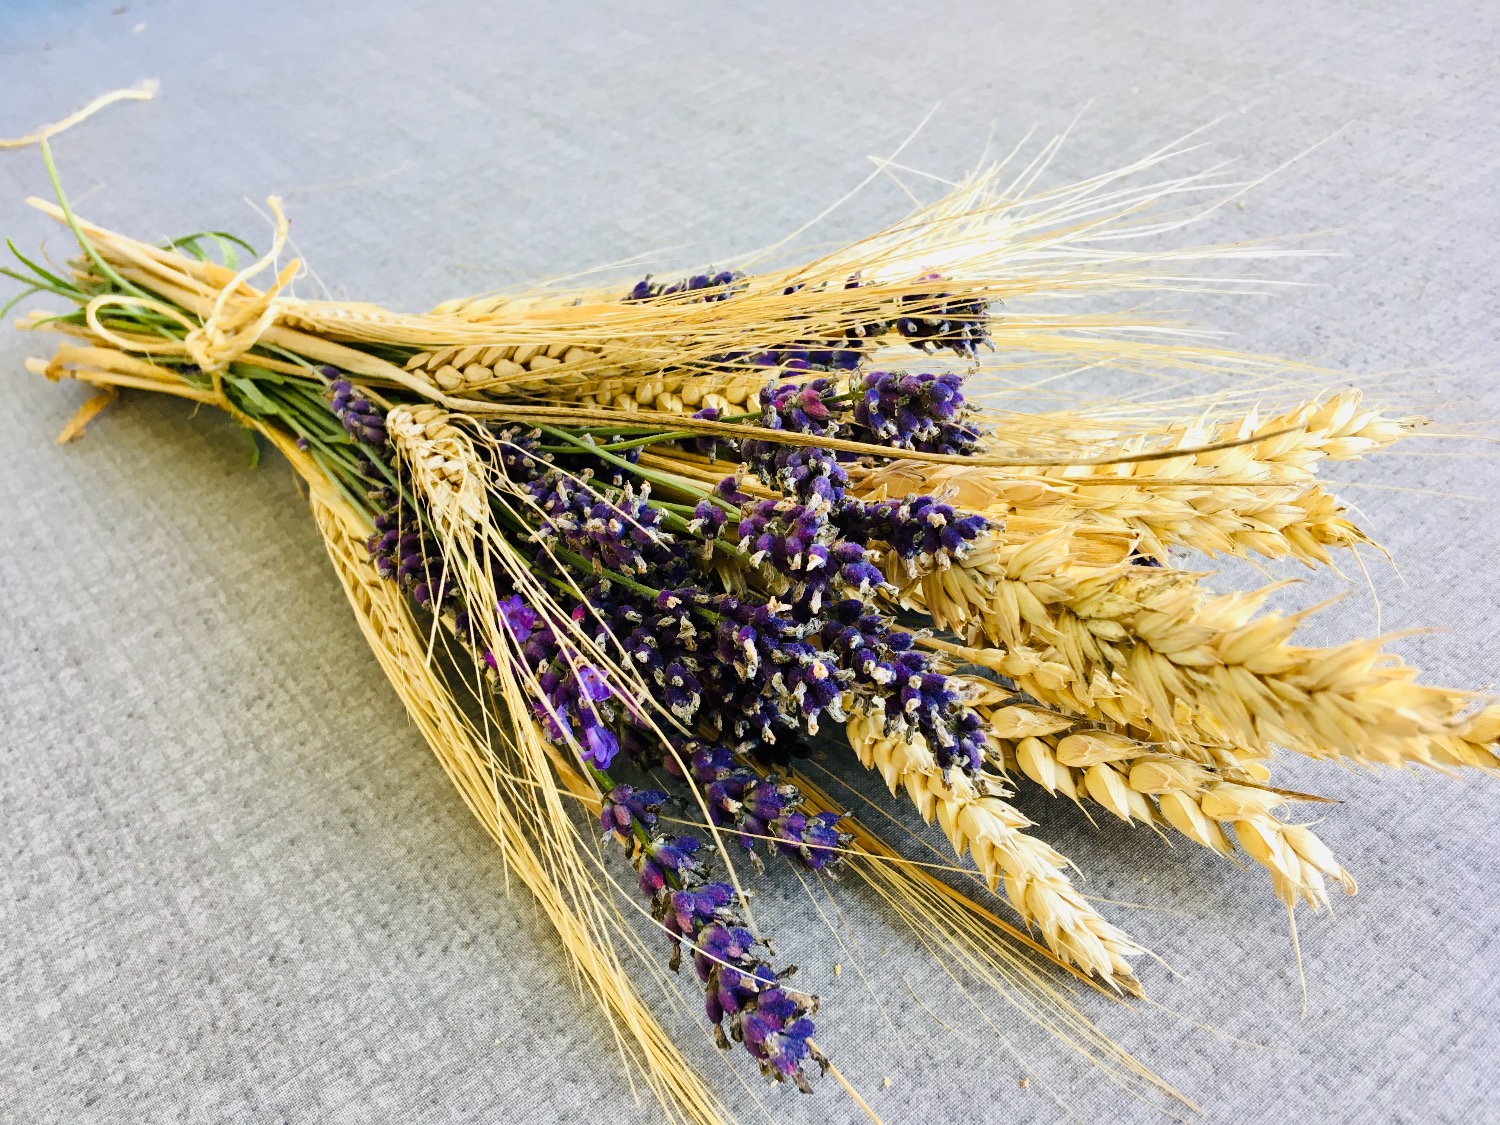 Titelbild zur Idee für die Beschäftigung mit Kindern 'Getreide-Lavendel-Strauß binden'